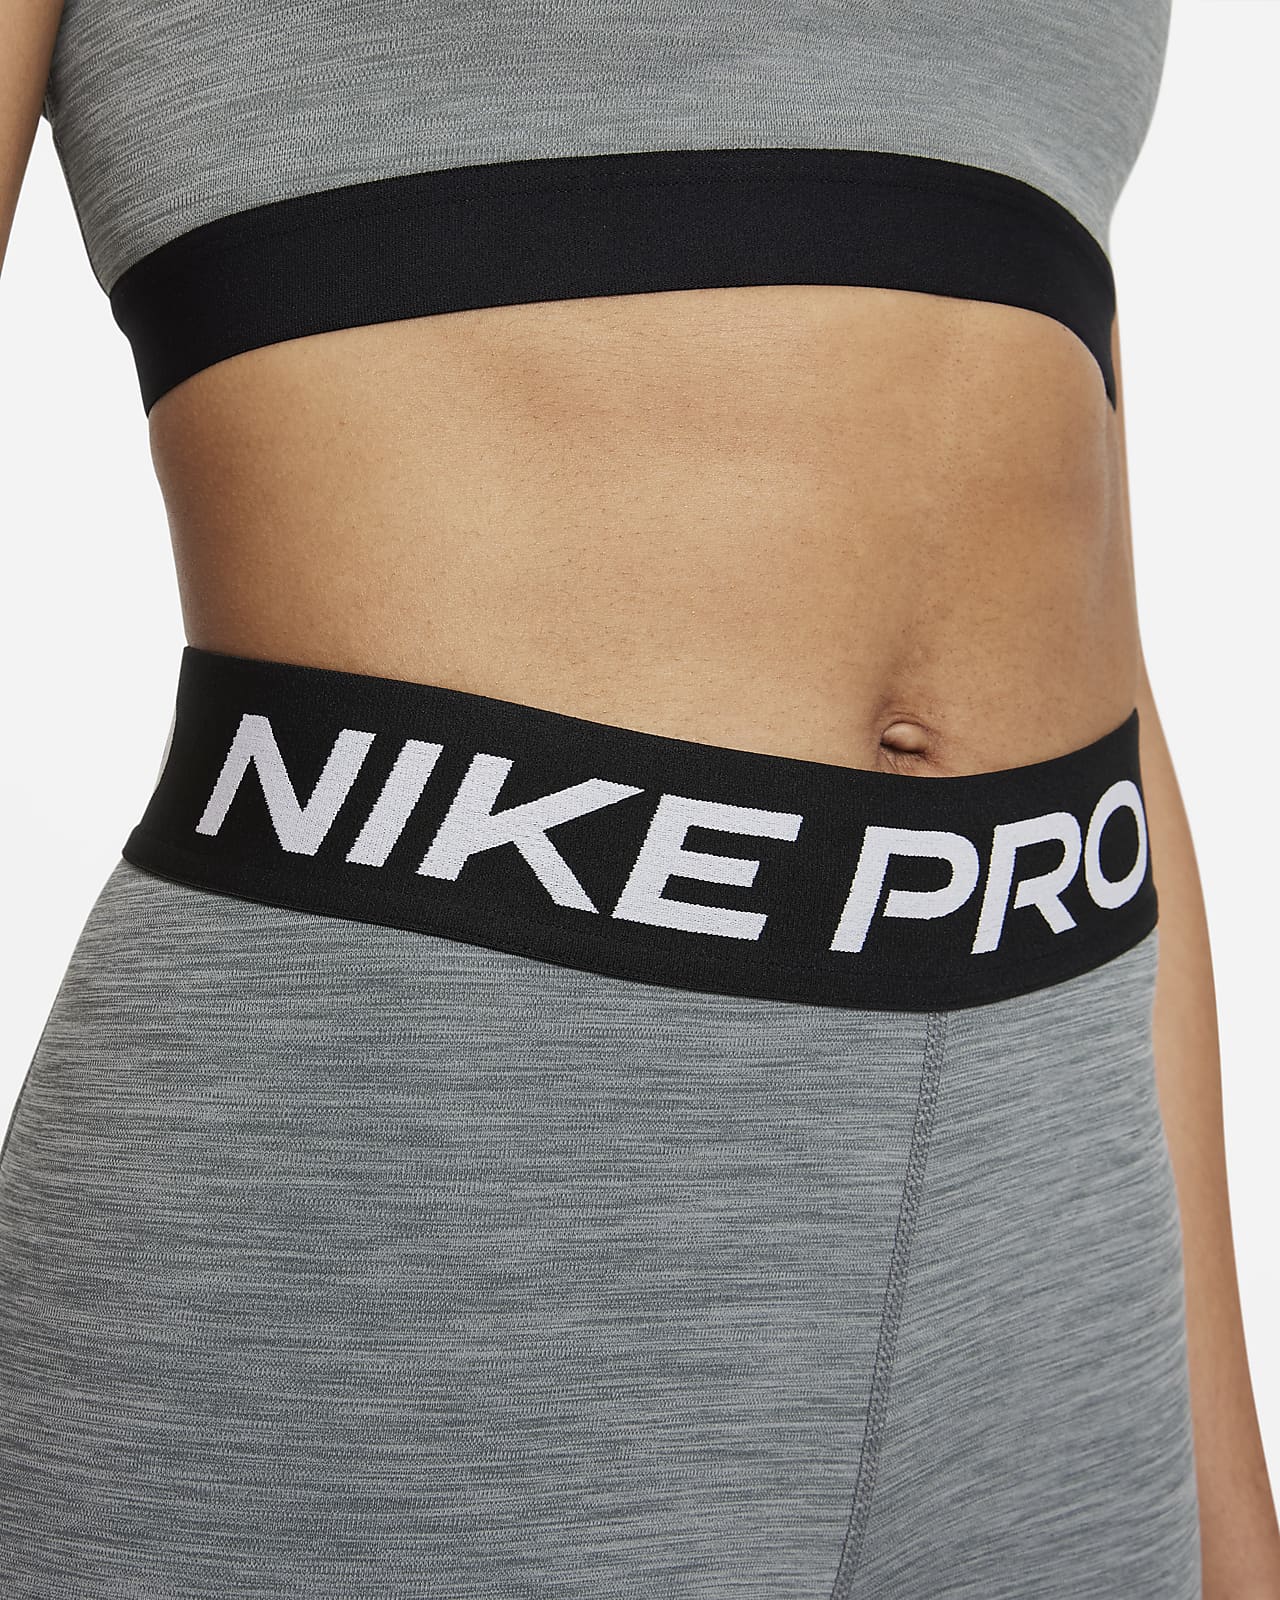 Nike Pro 365 Women s HW 7/8 Mesh Panel Leggings Model # DA0483-013 Size  Small